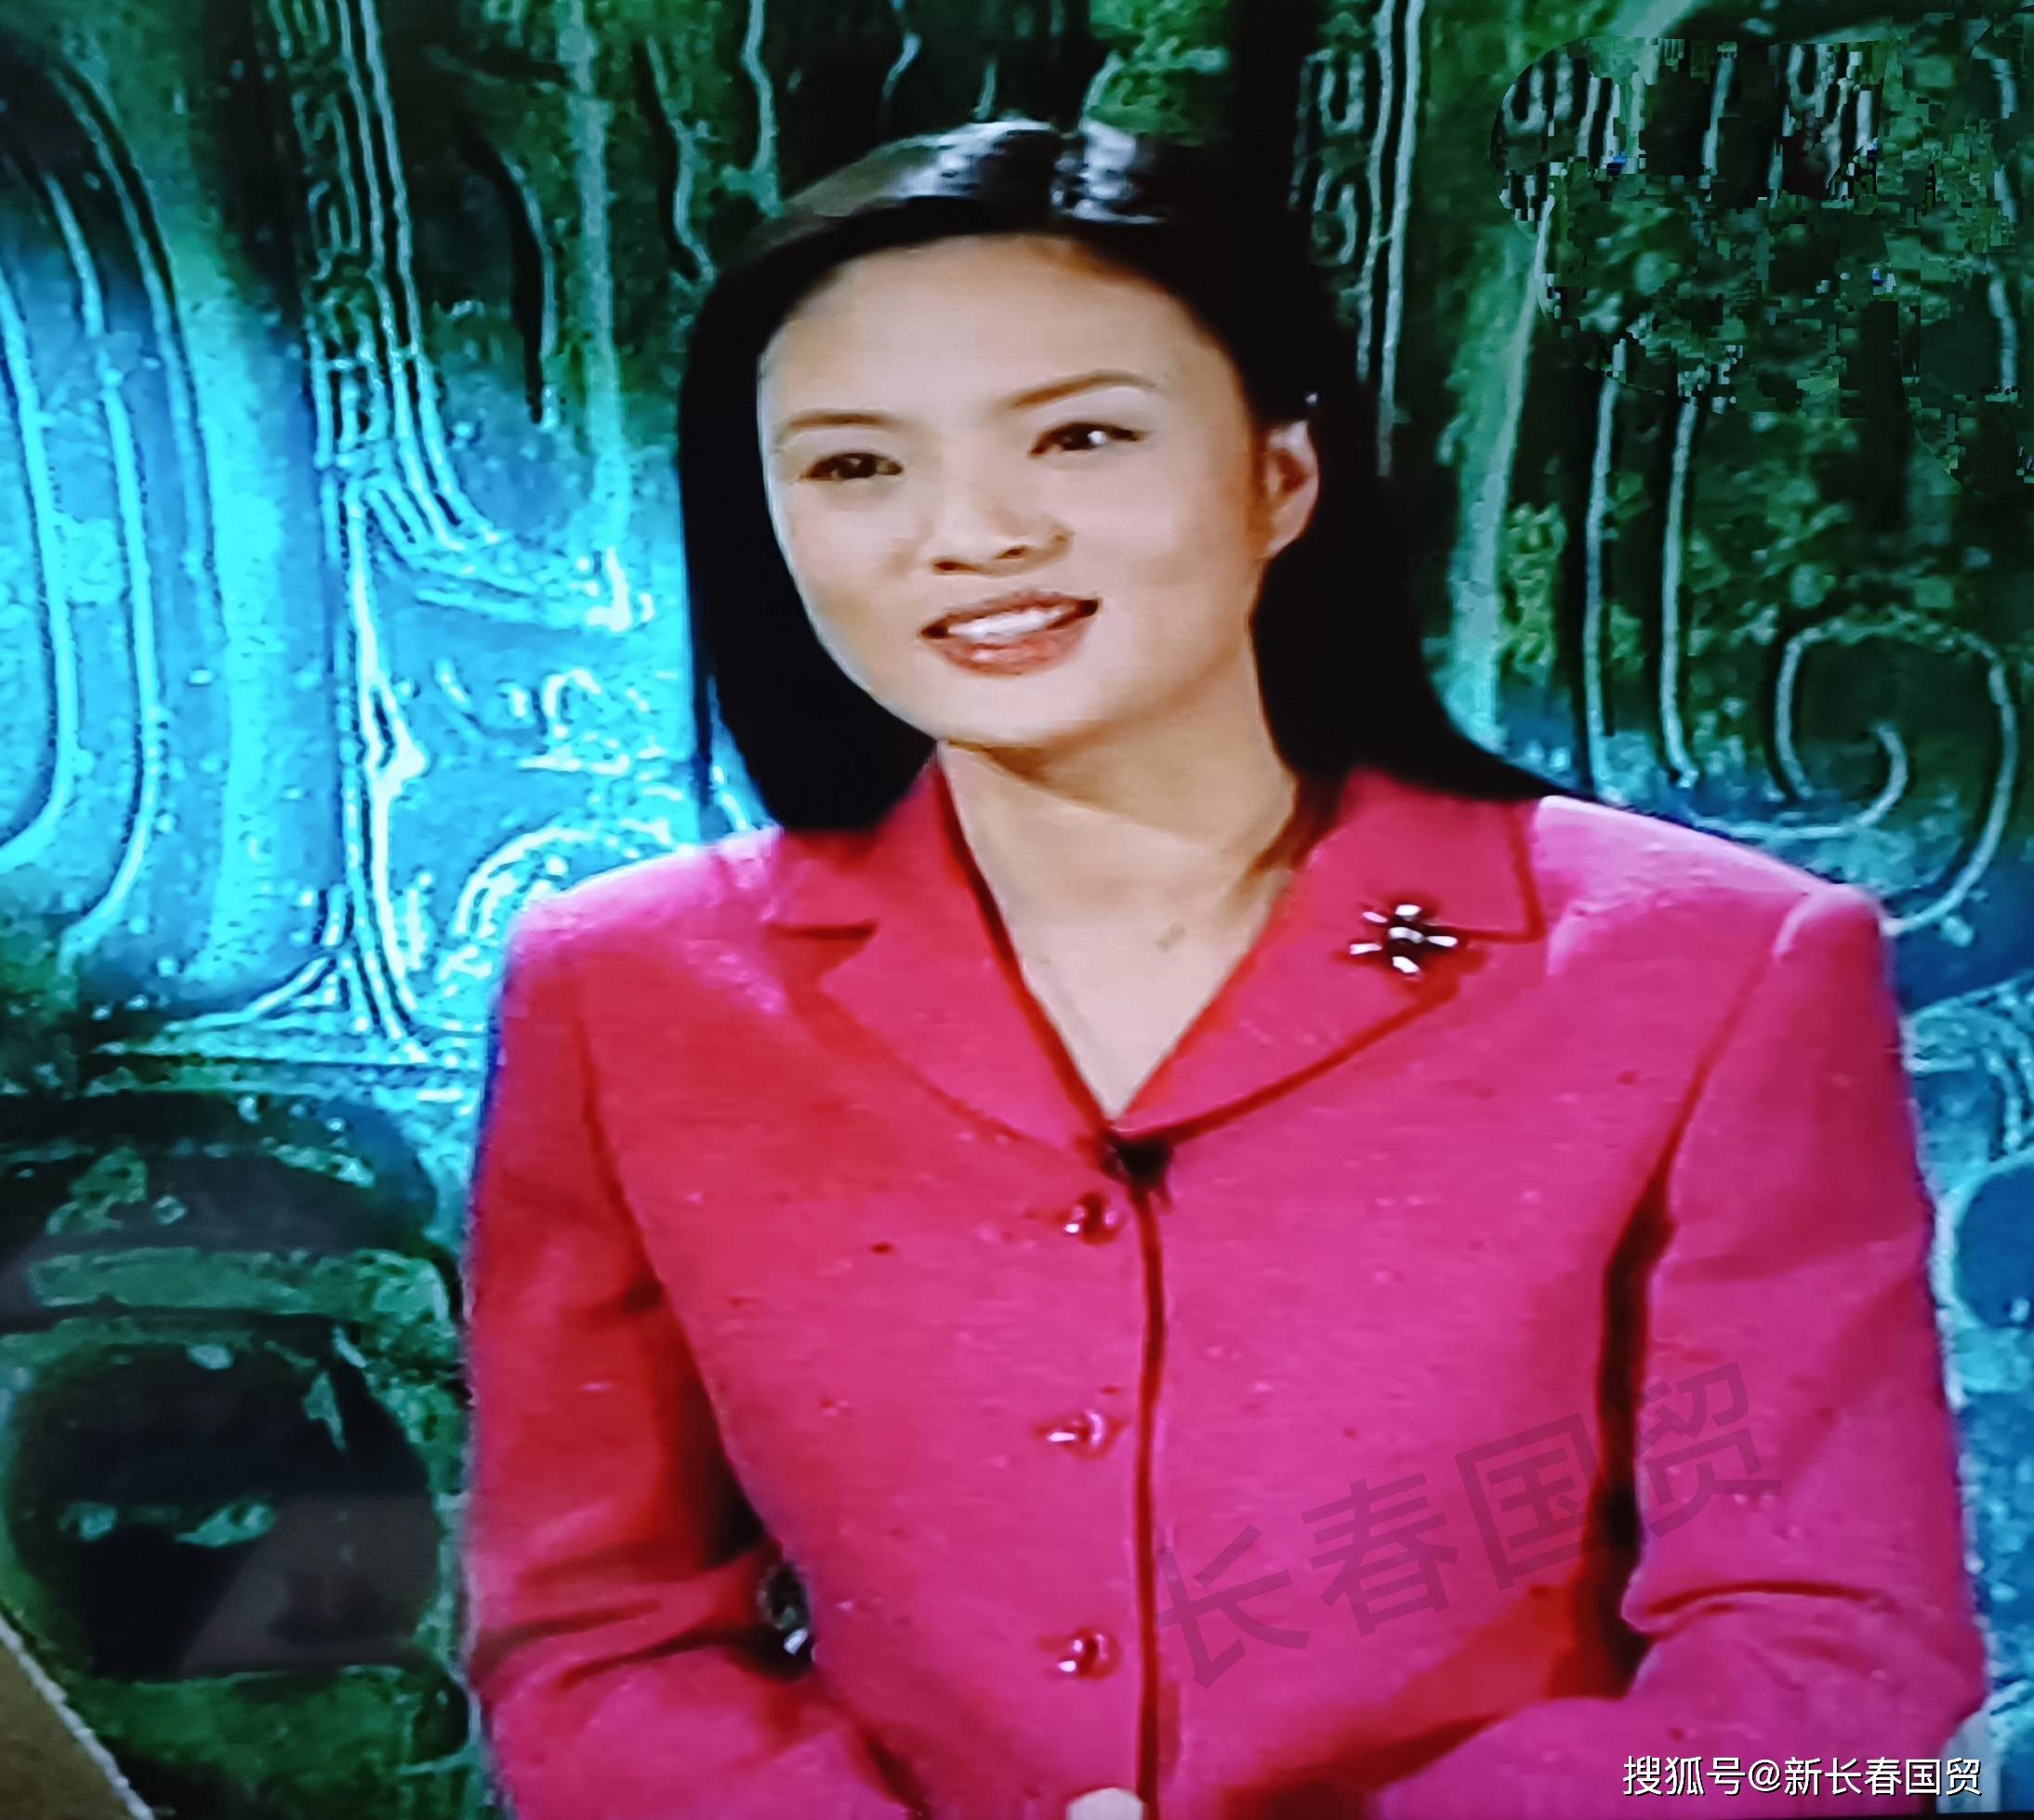 央视主持人刘芳菲20年前旧照曝光,长发披肩端庄文静气质好